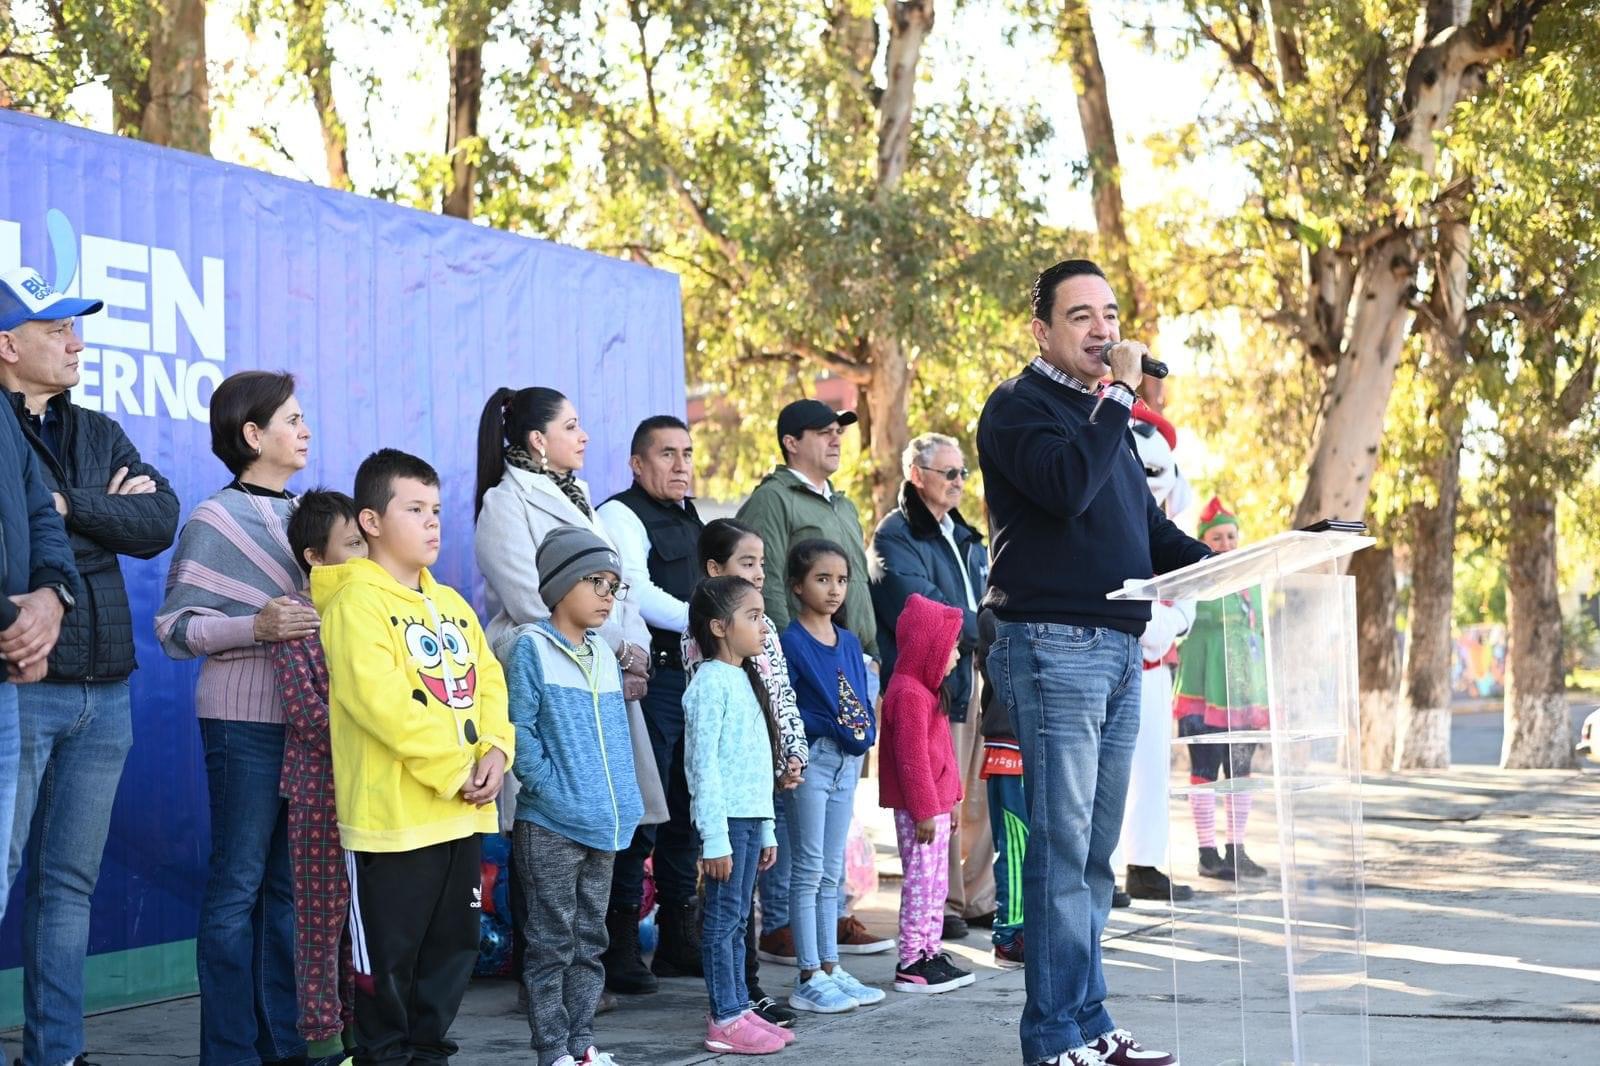 Carlos Soto puso en marcha la campaña “Sueños y Sonrisas”.